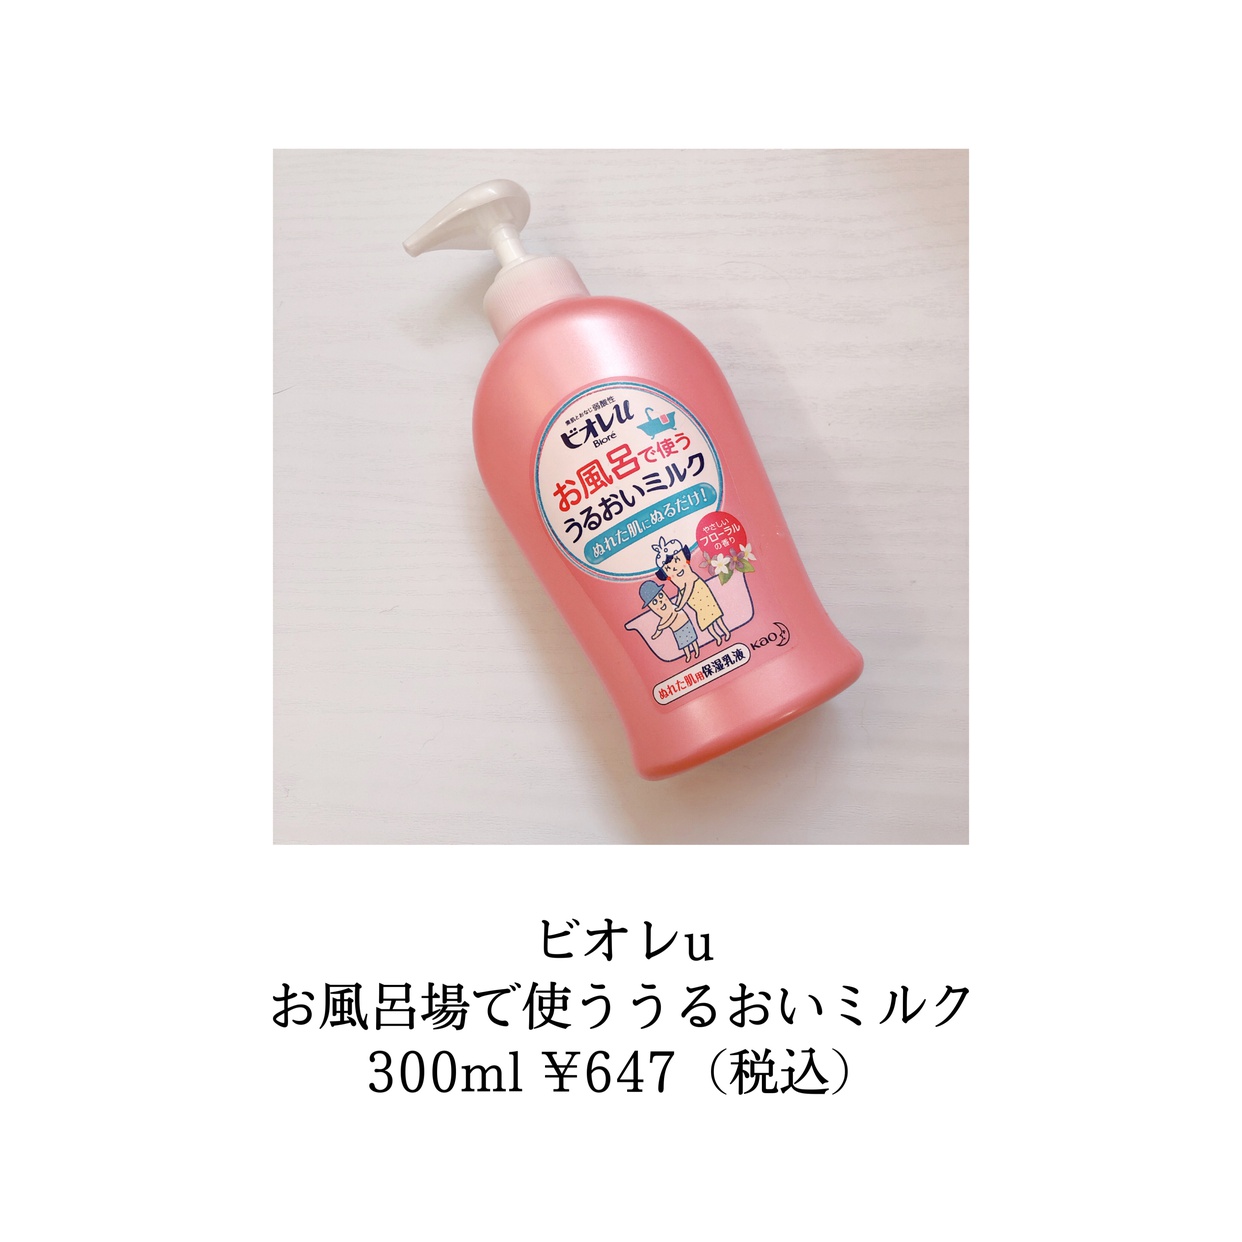 Bioré u(ビオレユー) お風呂で使う うるおいミルクを使ったsachikoさんのクチコミ画像4